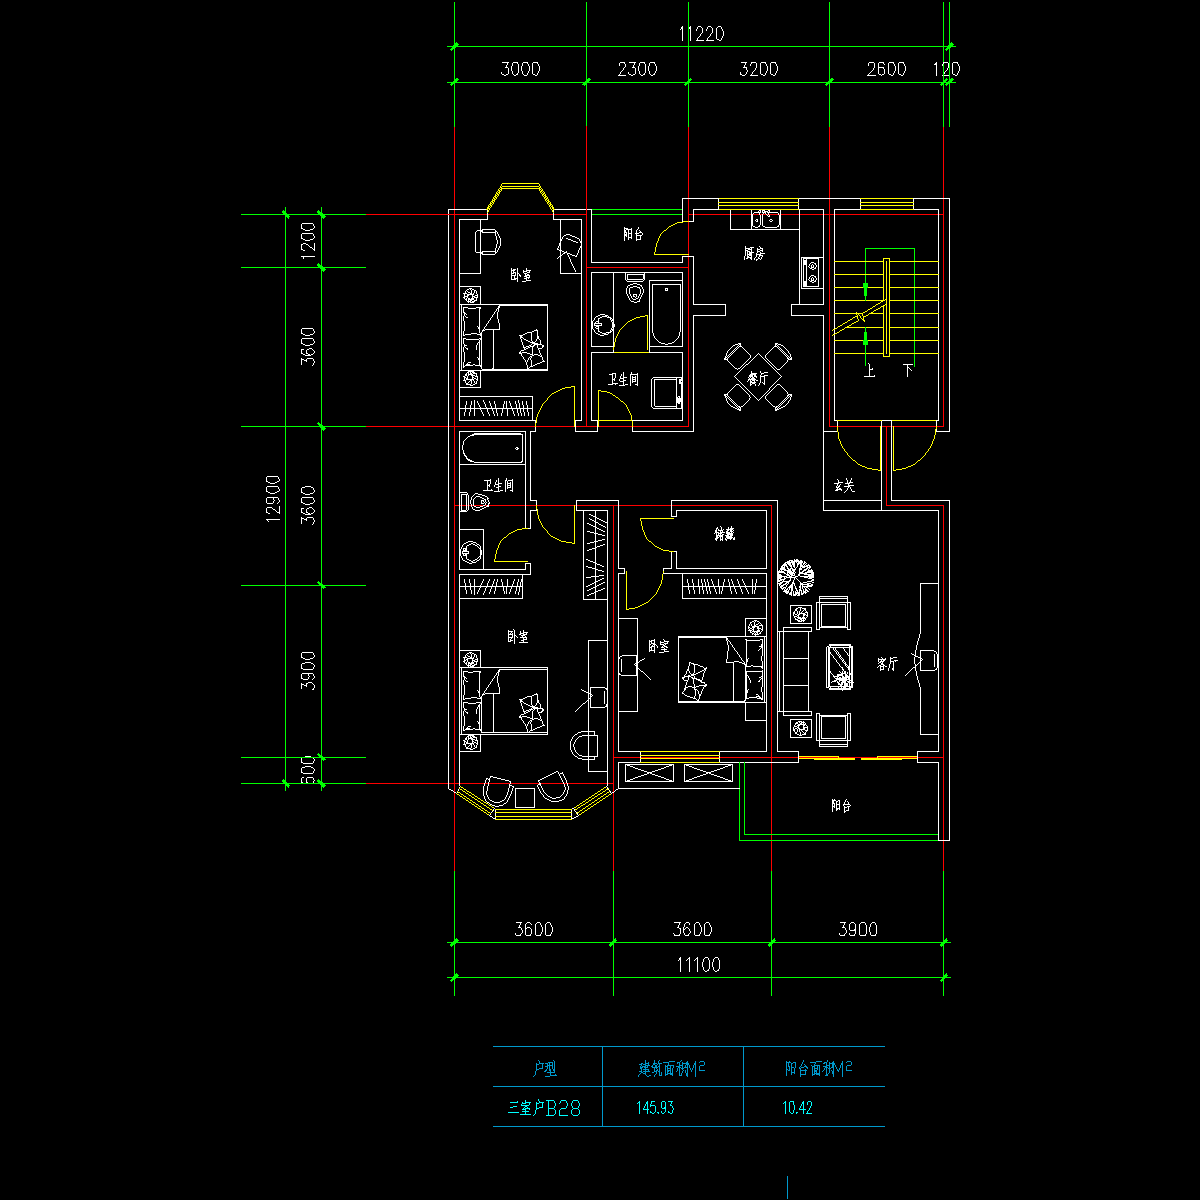 板式多层一梯两户三室一厅二卫户型CAD图纸(146/146)